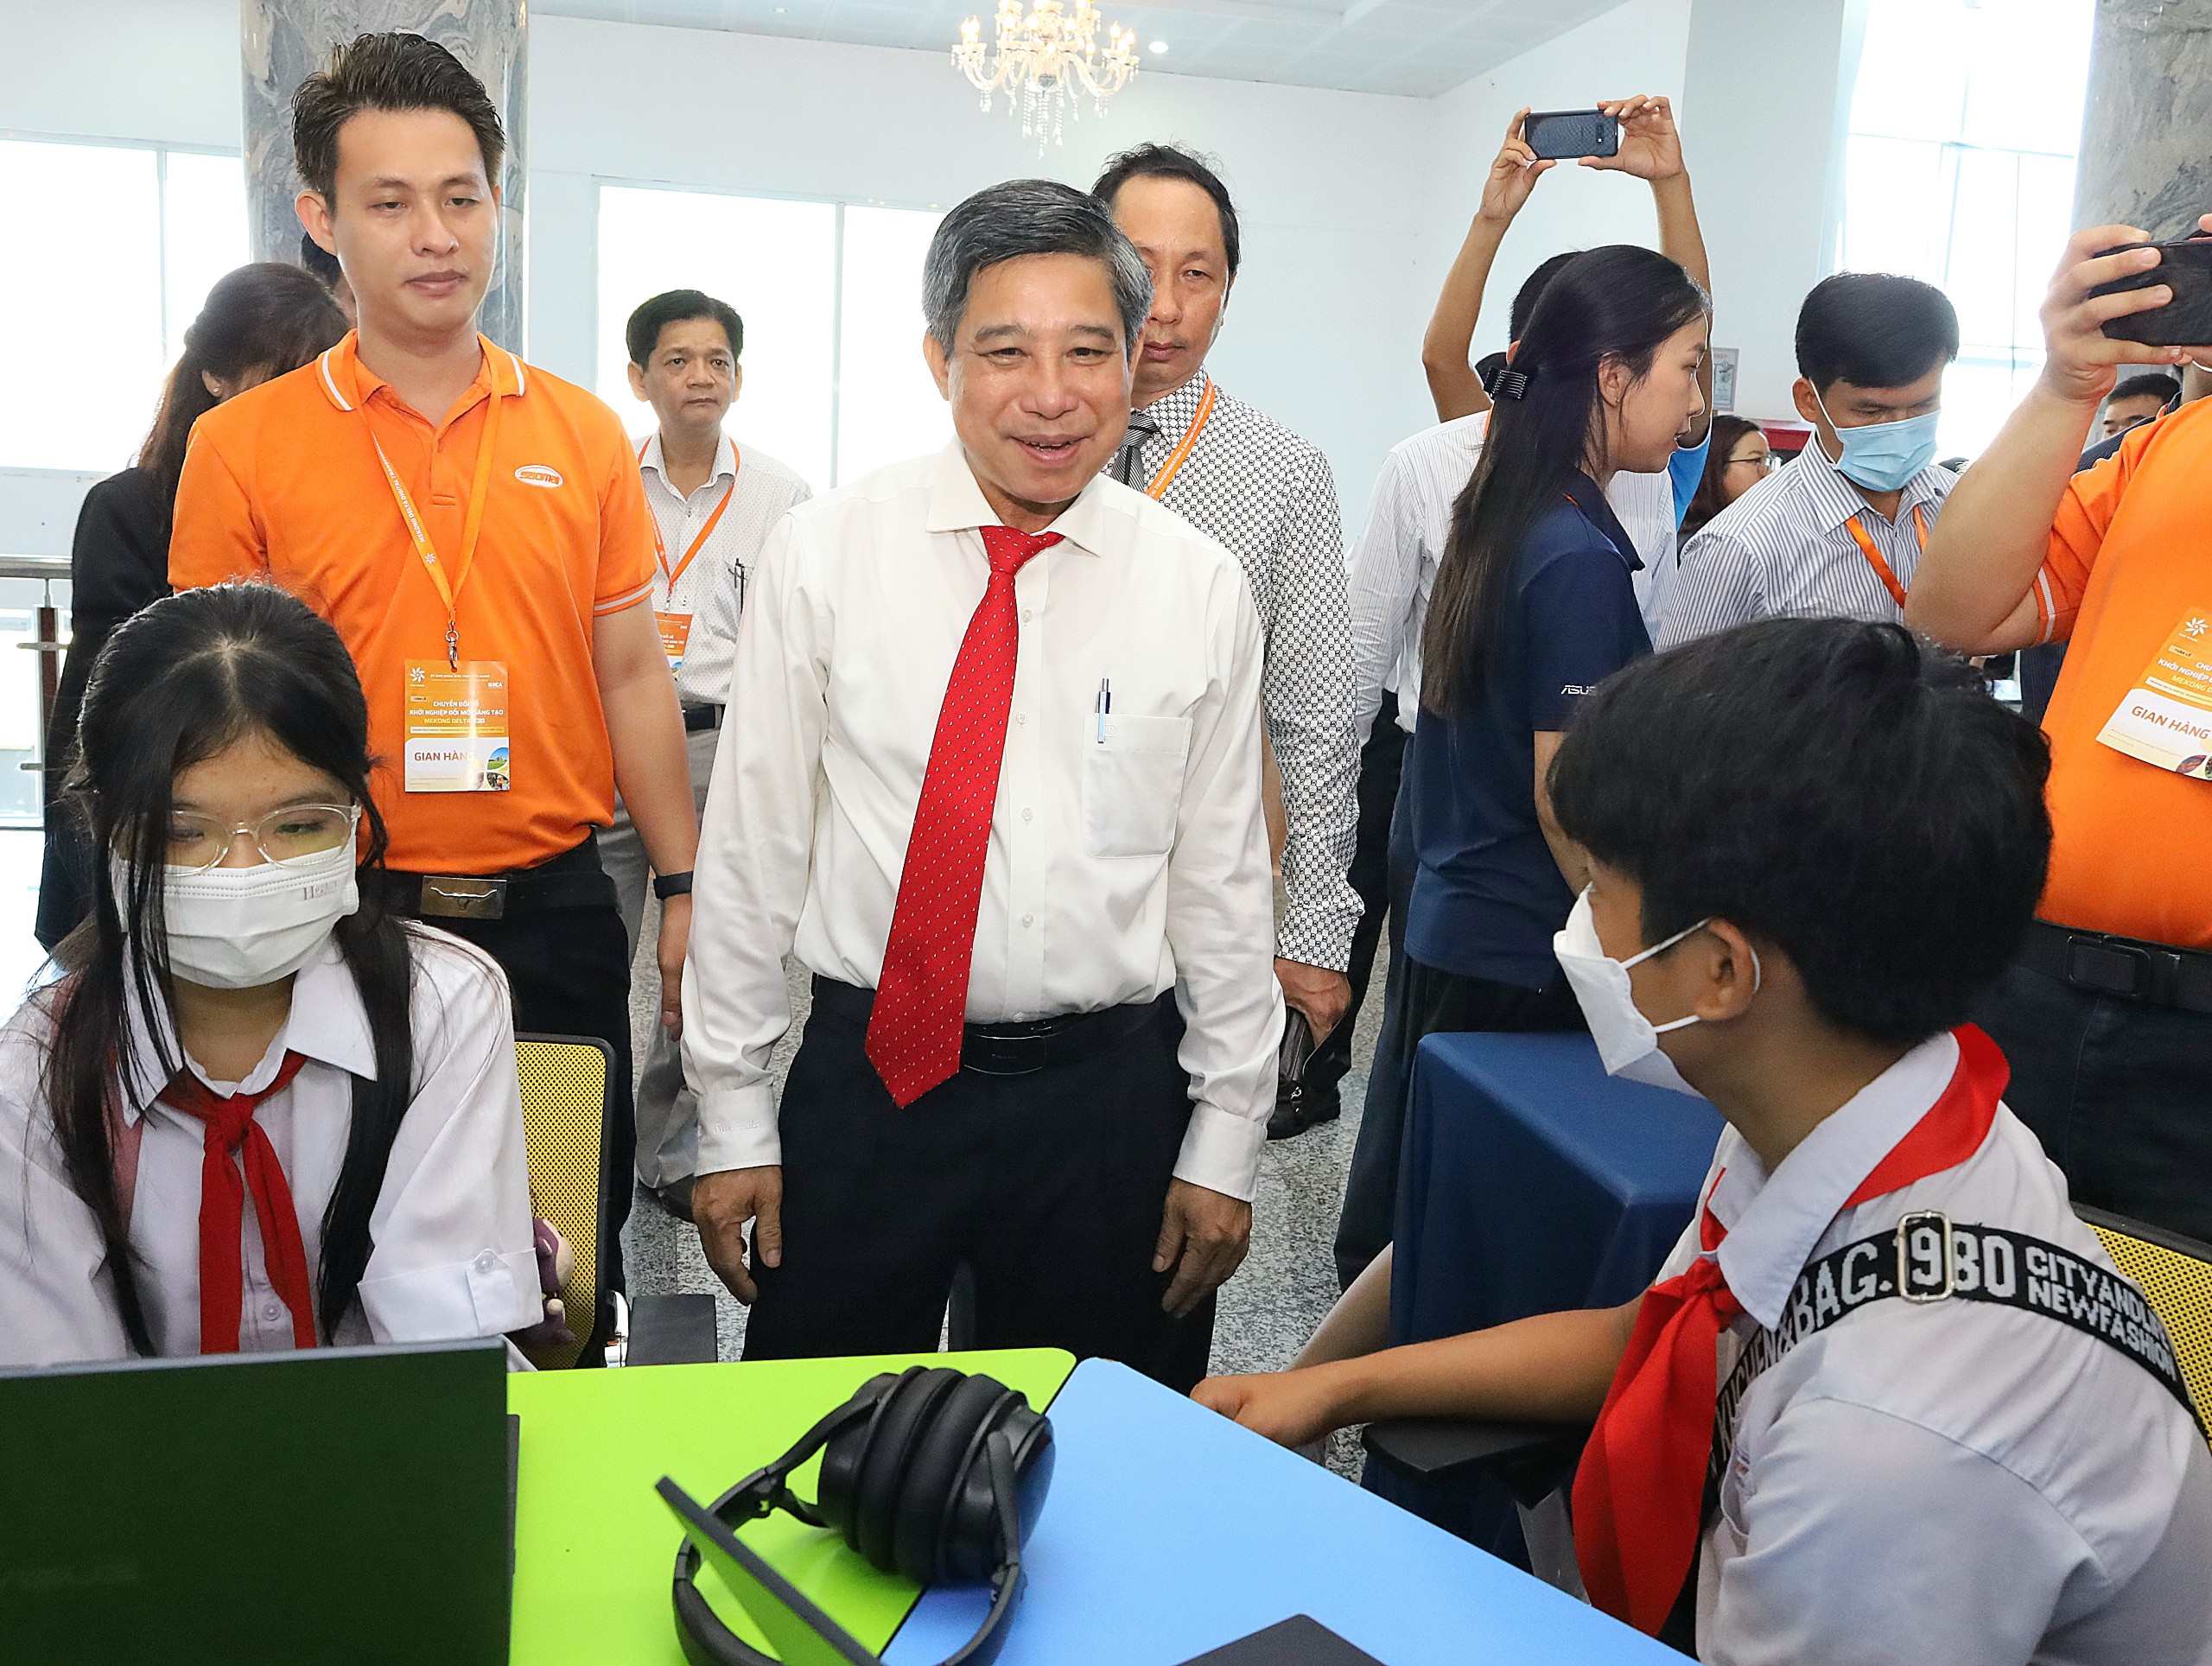 Ông Đồng Văn Thanh - Phó Bí thư Tỉnh ủy, Chủ tịch UBND tỉnh Hậu Giang trò chuyện cùng các em học sinh tham gia trải nghiệm tại chương trình.